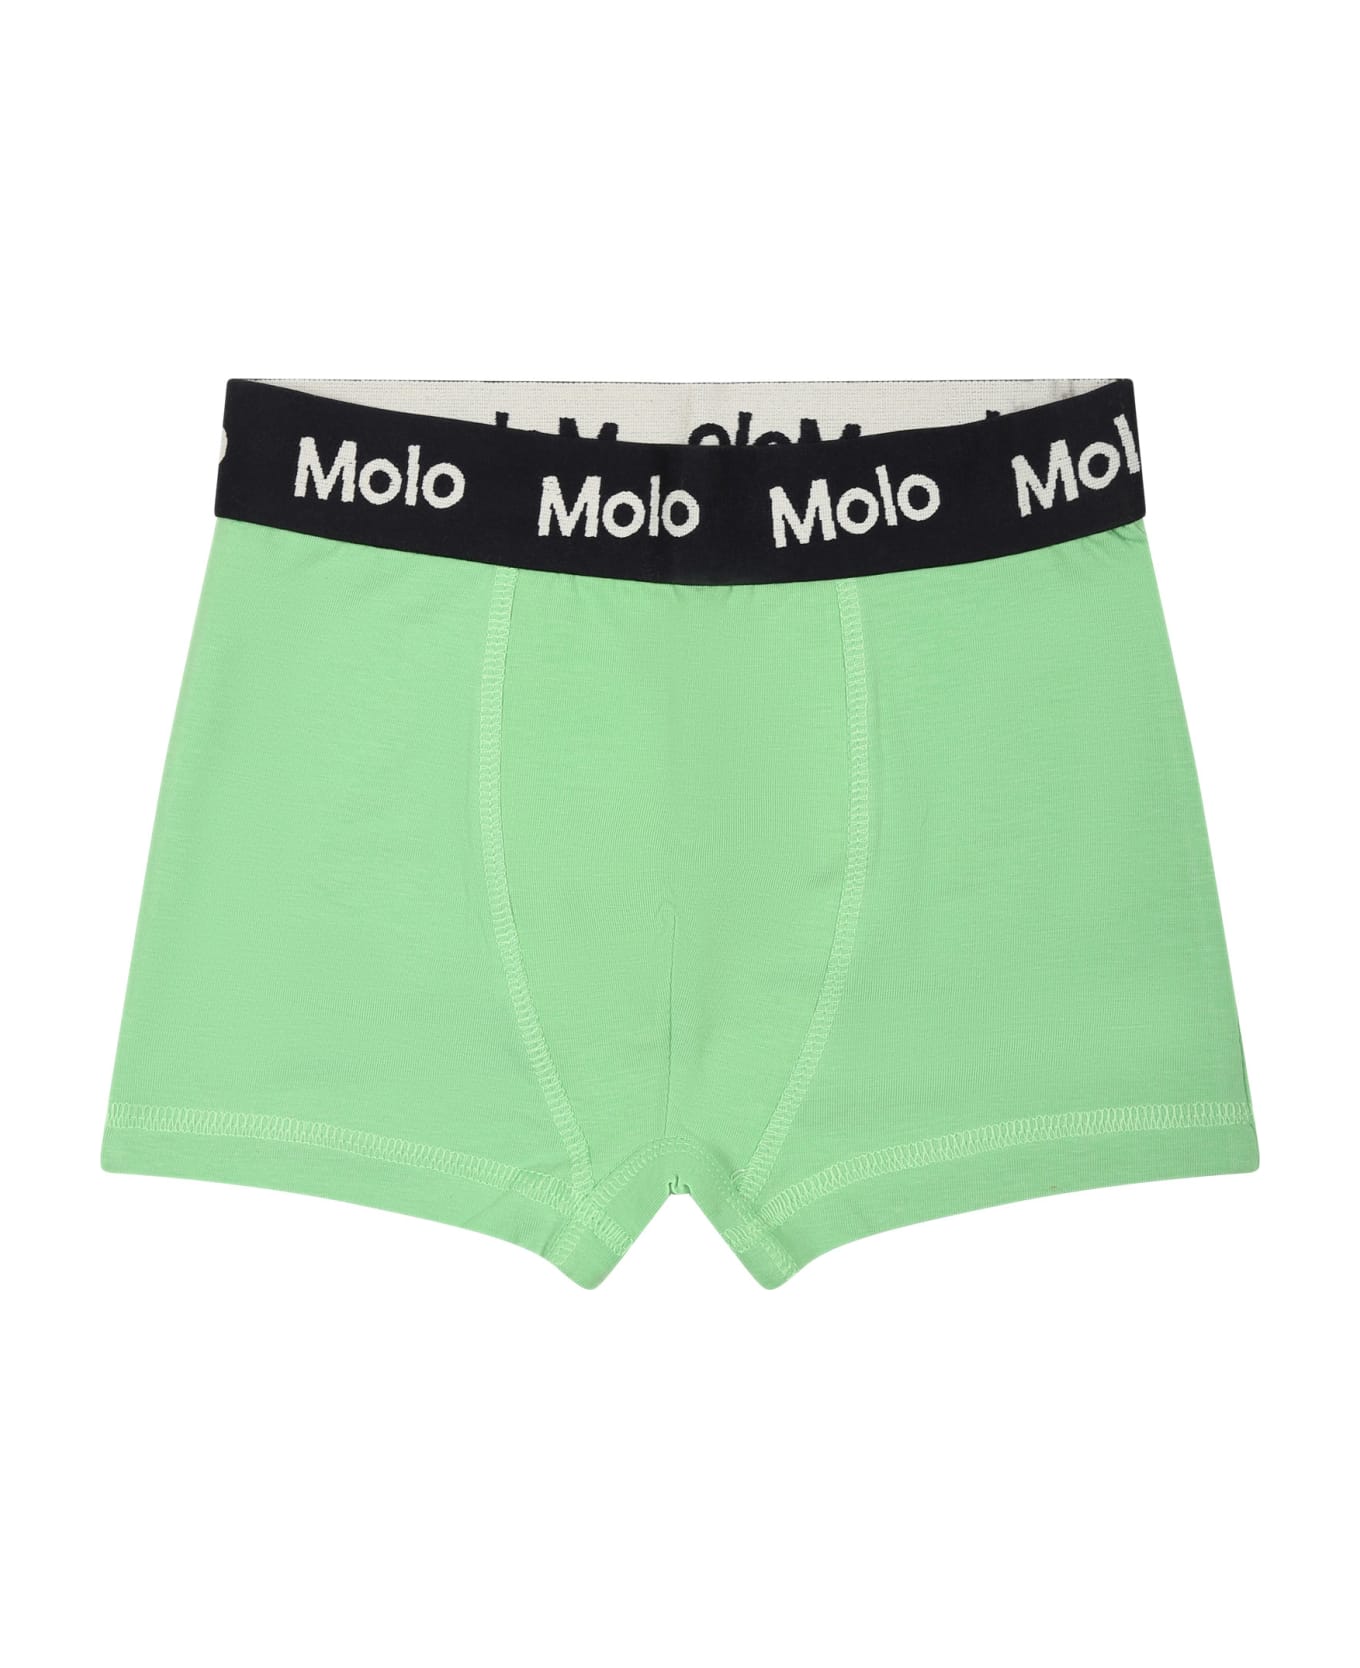 Molo Multicolor Boxers Set For Boy - Multicolor アンダーウェア